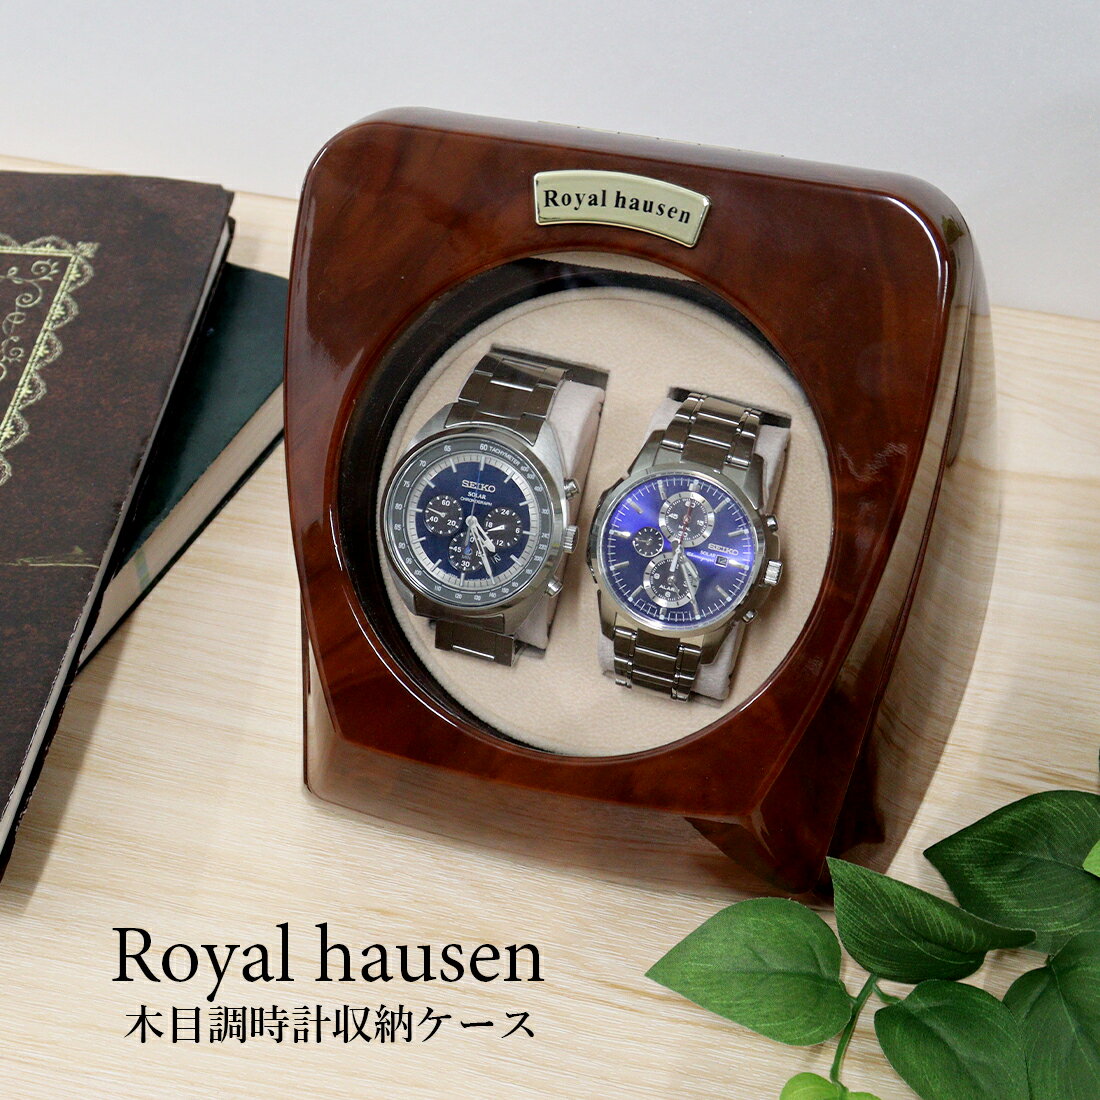 公式 Royal hausen ロイヤルハウゼン ワインダー ウォッチワインダー ワインディングマシーン 2本巻き RH003 木目調 ウォッチケース 腕時計ケース